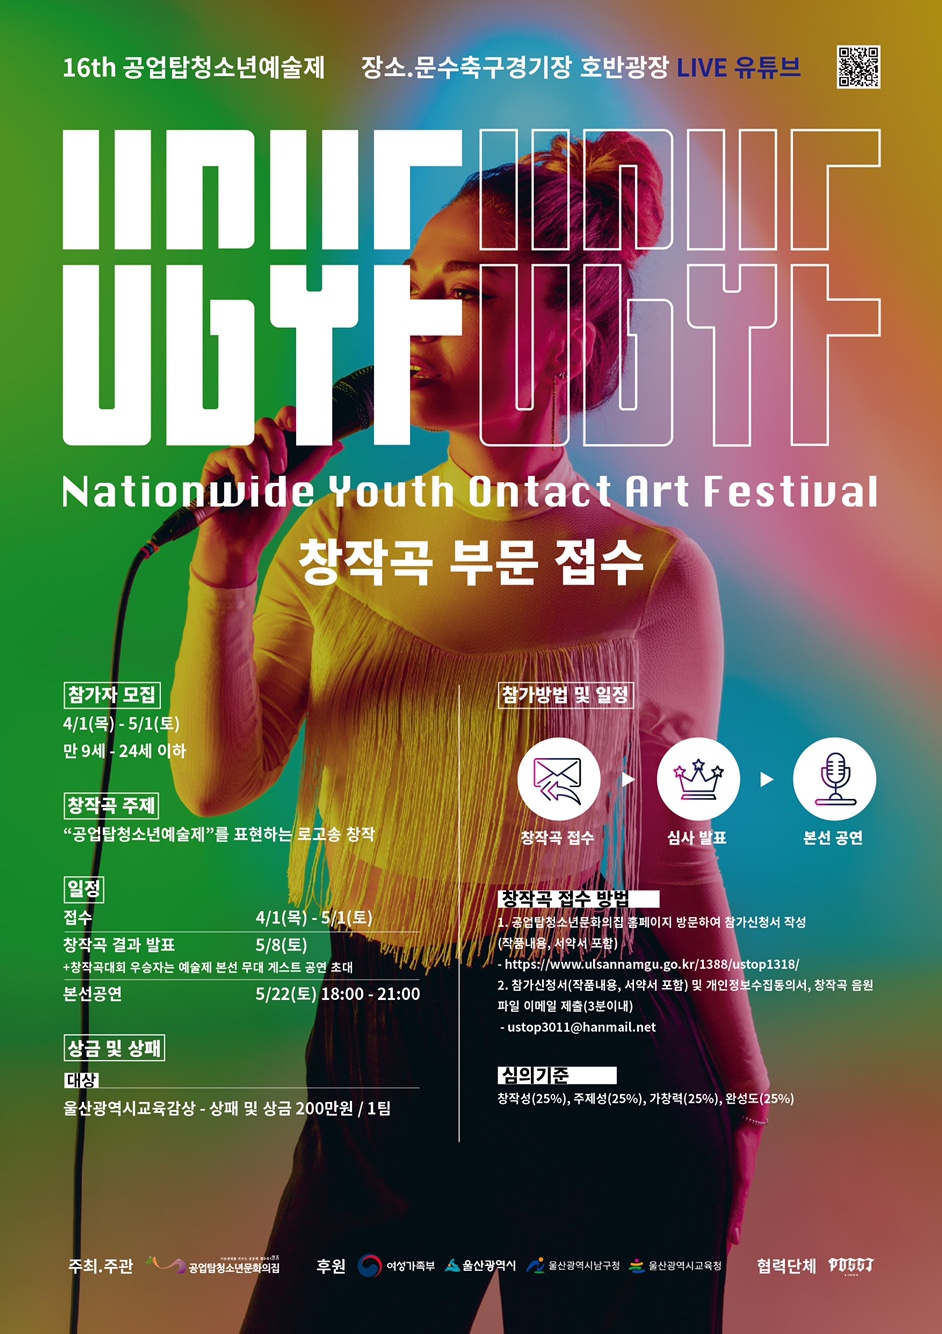 16th 공업탑청소년예술제 Nationwide Youth Ontact Art Festival “U.G.Y.F”(창작곡)